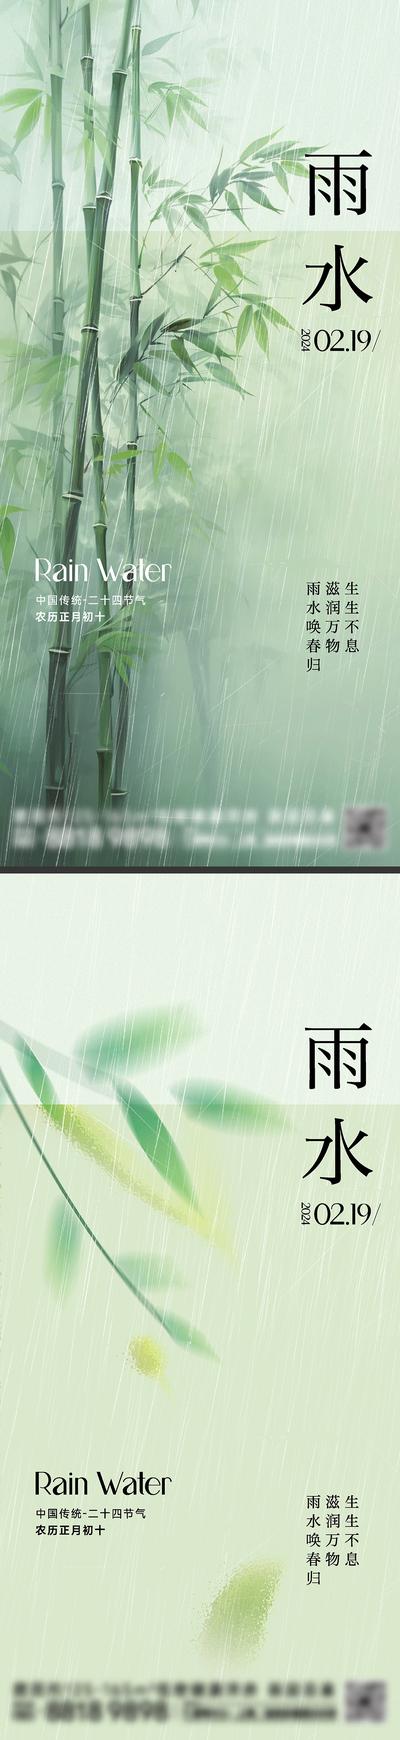 南门网 广告 海报 节日 雨水 插画 中式 房地产 二十四节气 谷雨 春天 下雨 竹林 竹子 简约 叶子 清新 意境